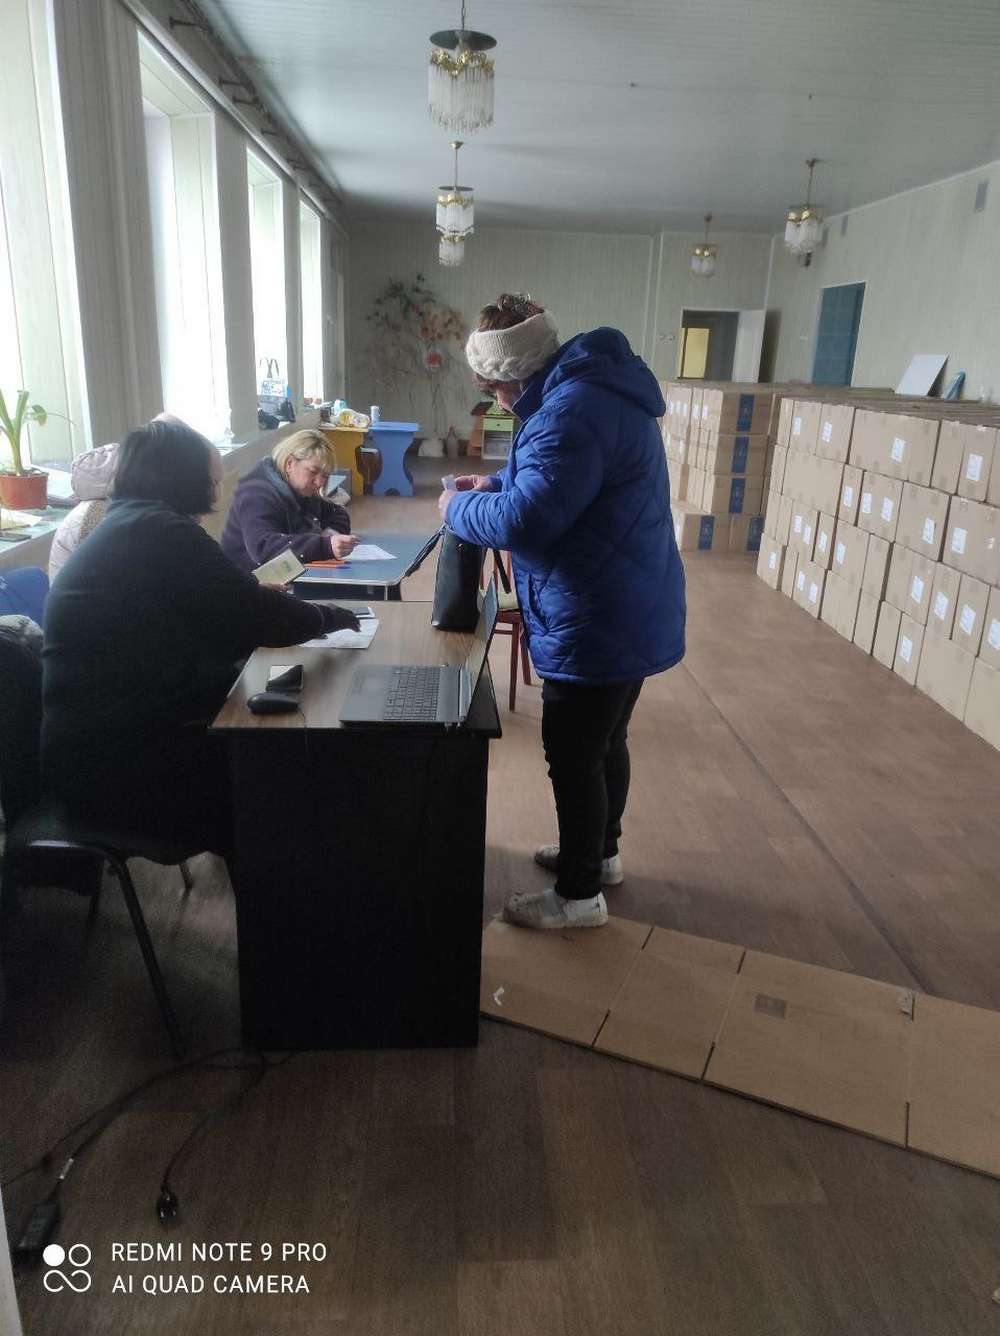 Яку гуманітарну допомогу отримали мешканці Нікопольщини на цьому тижні, розповів Євтушенко (фото)